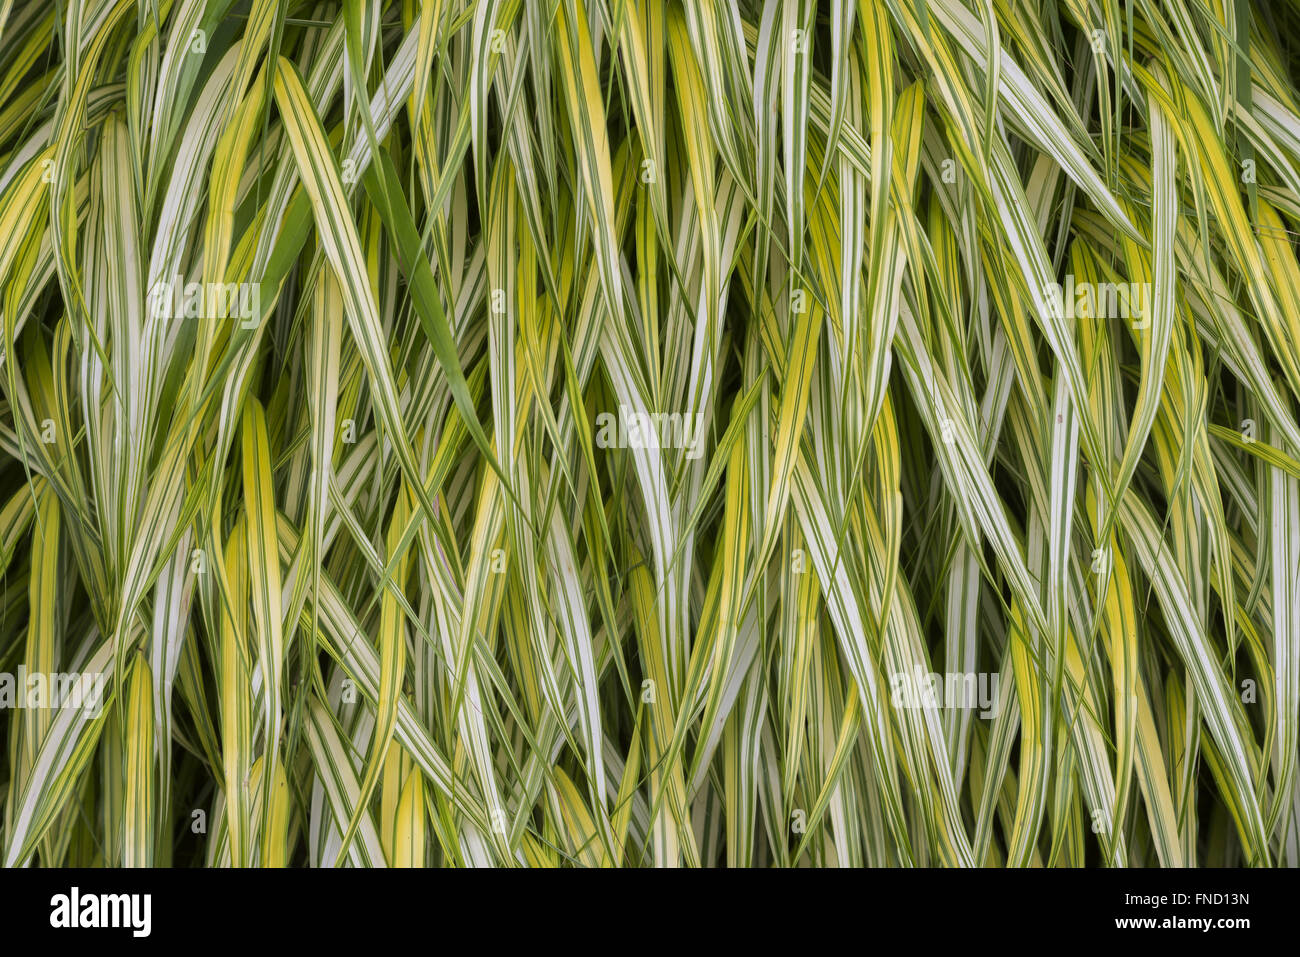 Un gros plan d'Hakone grass (Hakonechloa macra 'Aureola') est un fond texturé organique. Banque D'Images